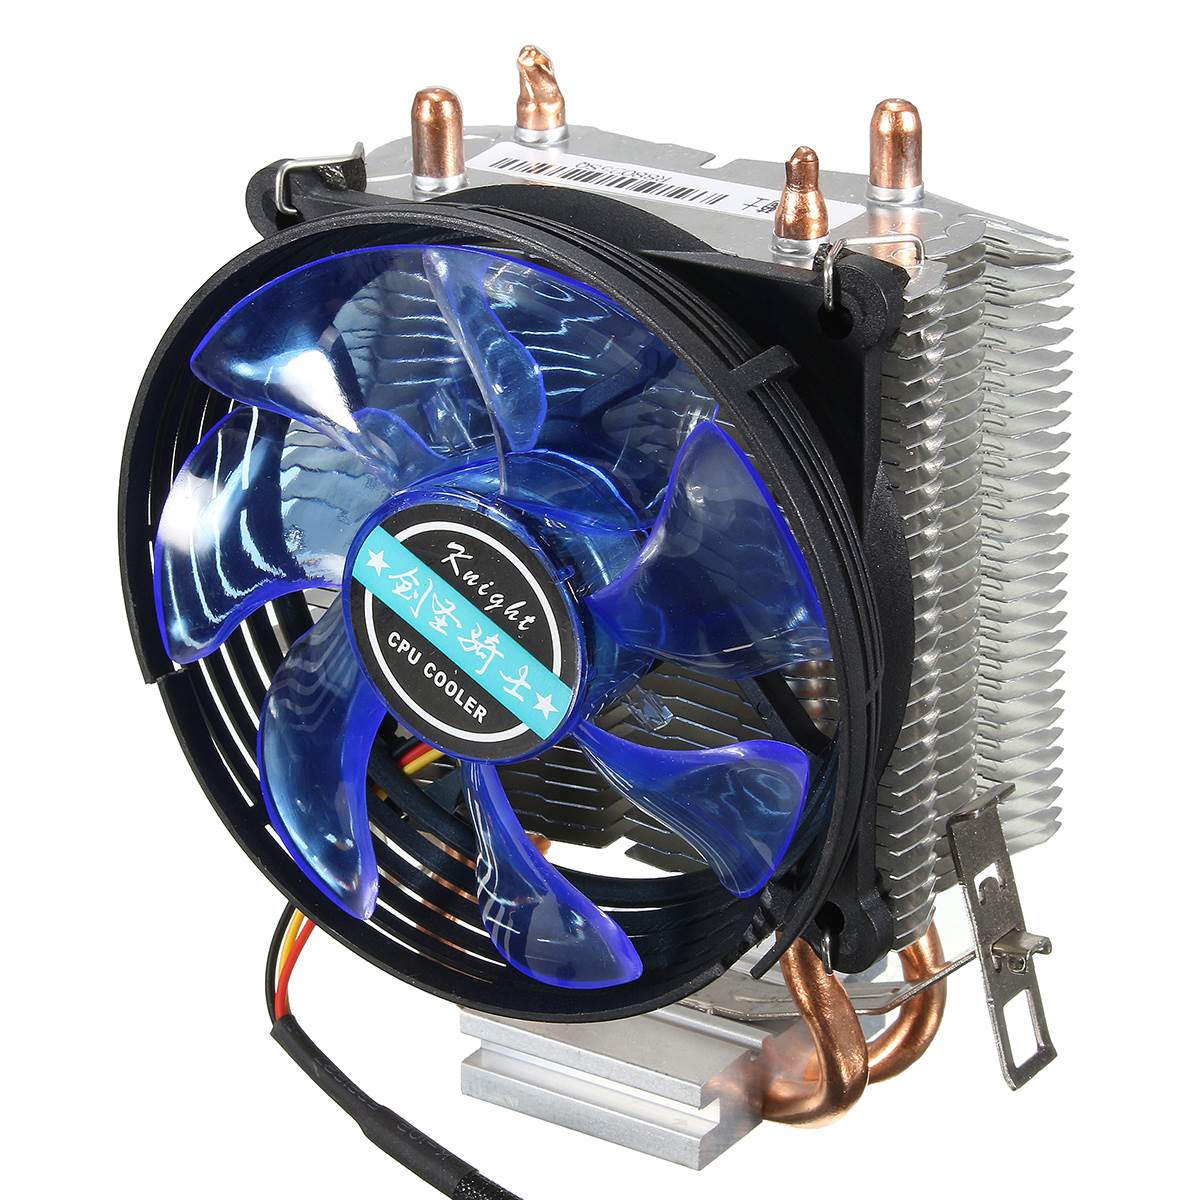 Original CPU cooler for APPLE MACBOOK A1181 A1185 AM255 945 cpu fan genuine A1185 A1181 laptop cpu cooling fan